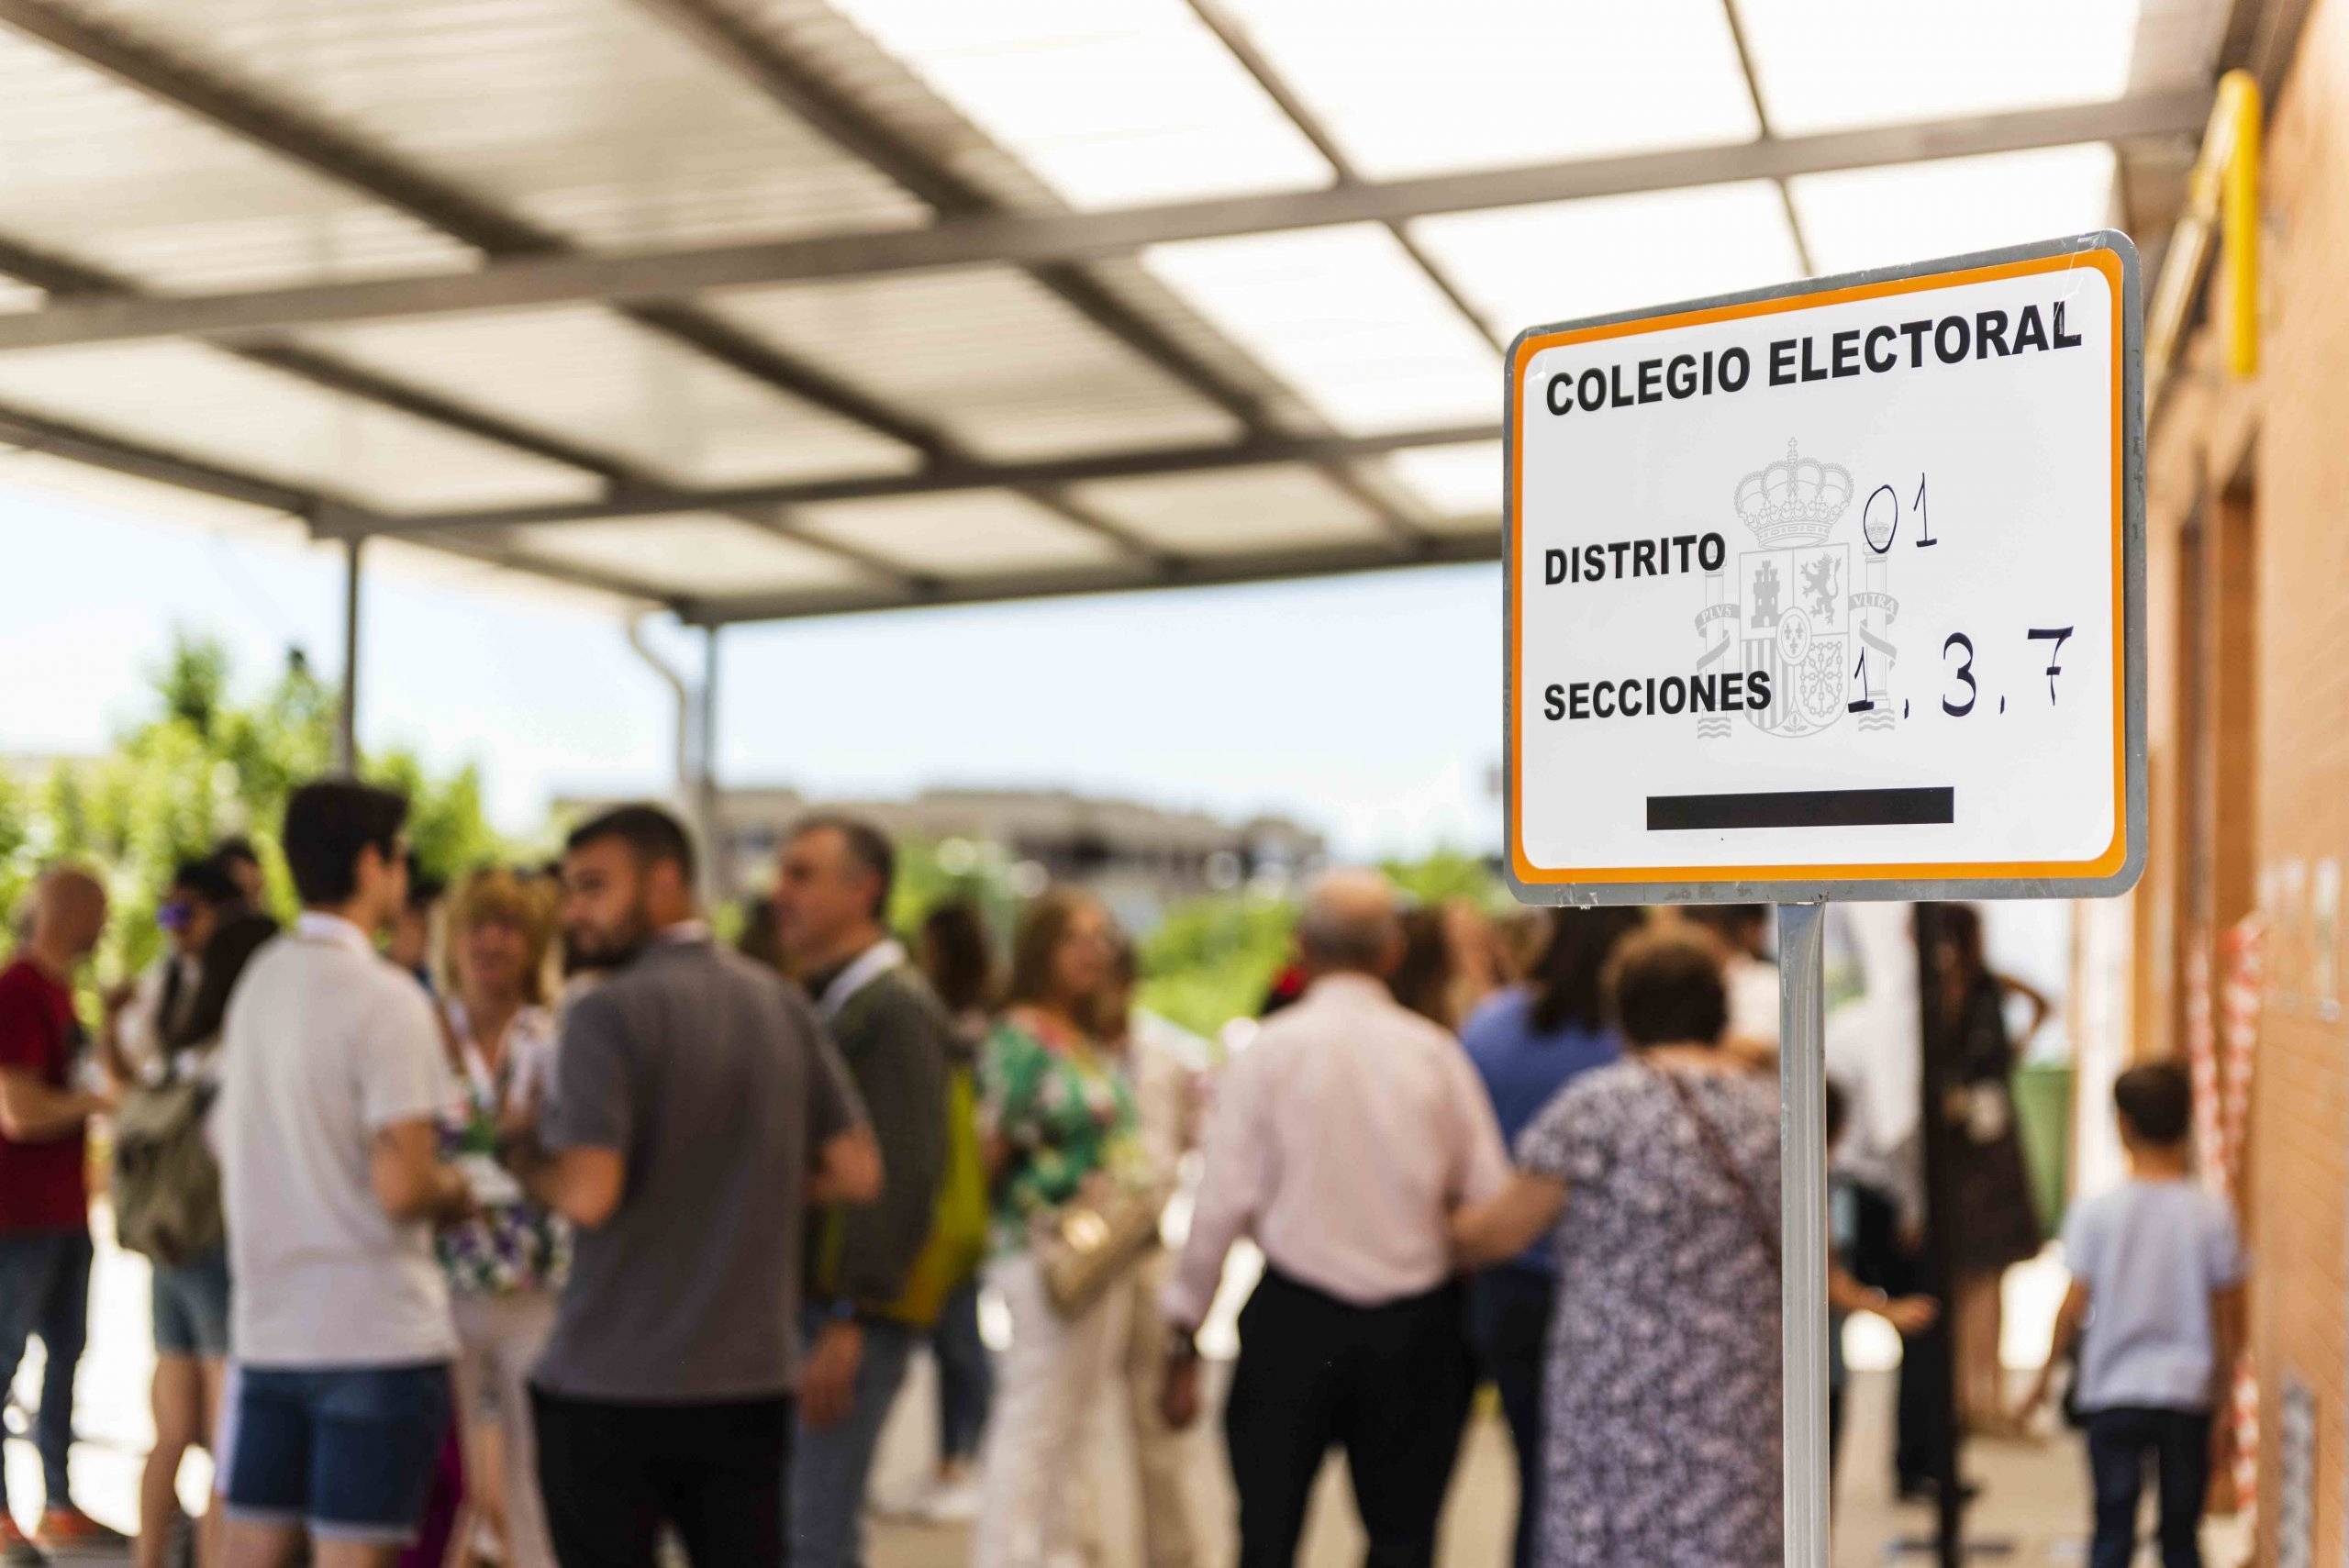 Imagen de cartel de colegio electoral en primer plano y gente al fondo.